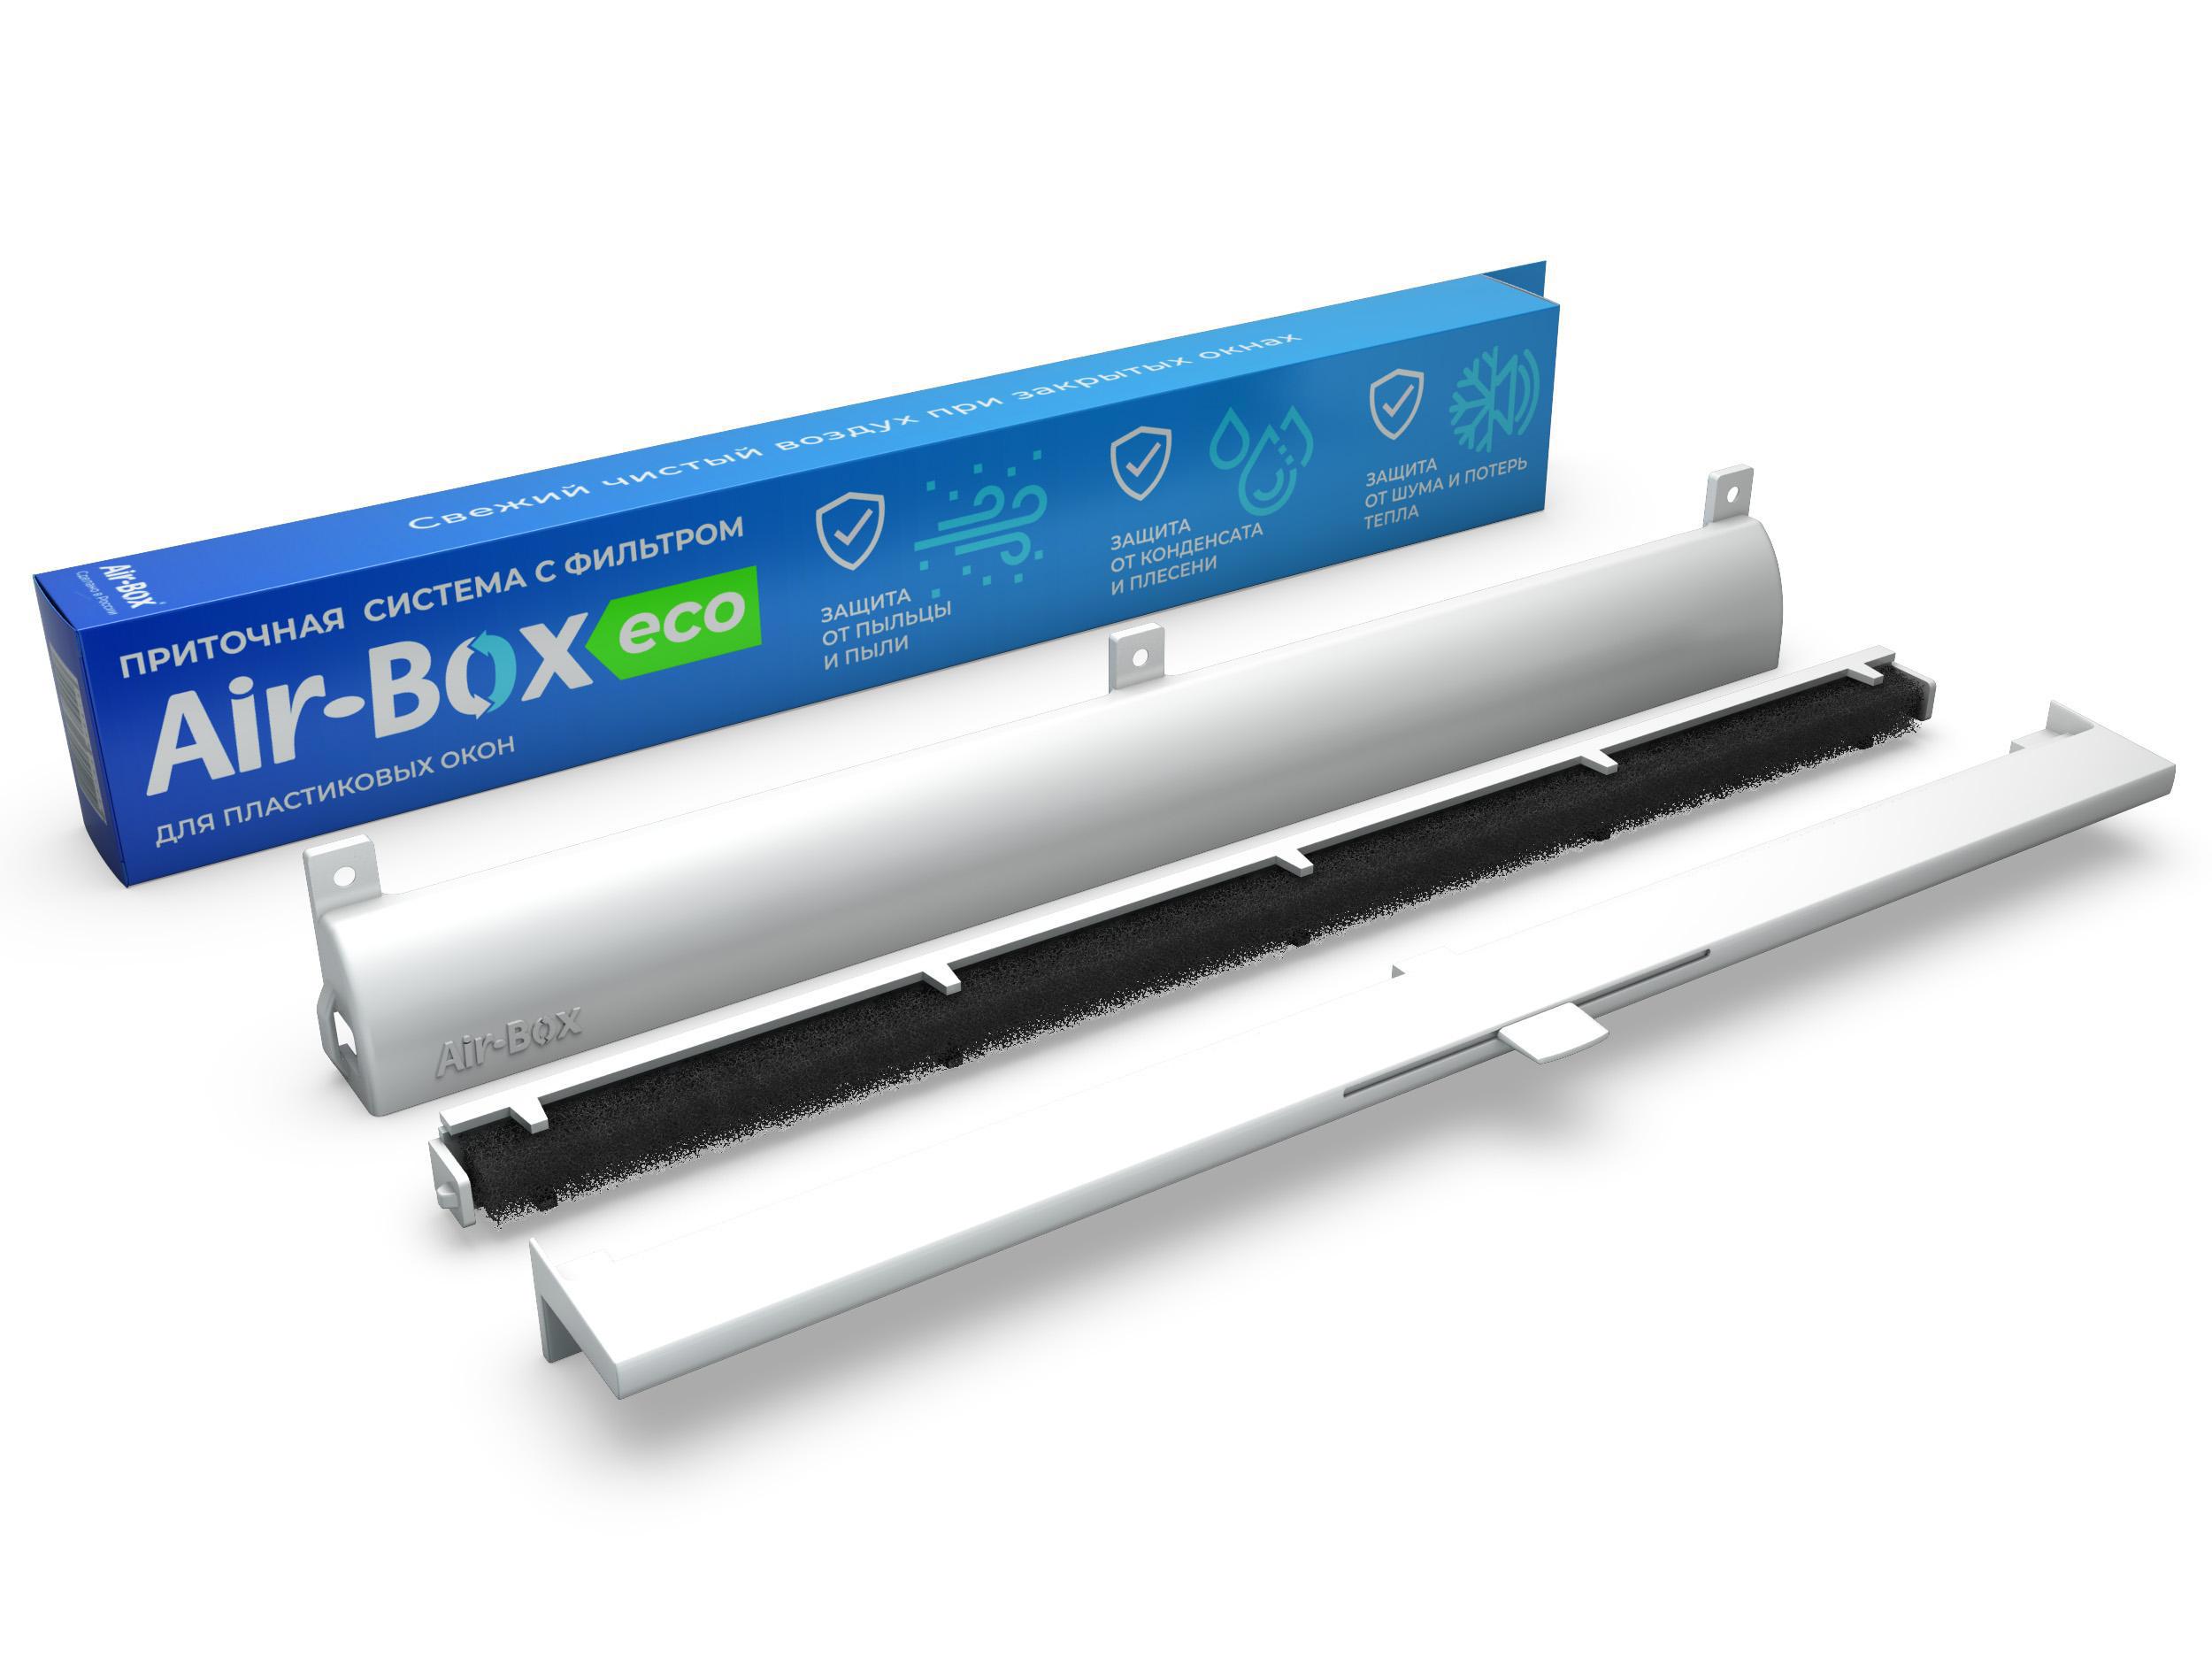 Air-Box Comfort — вентиляционные (приточные) клапаны для окон ПВХ